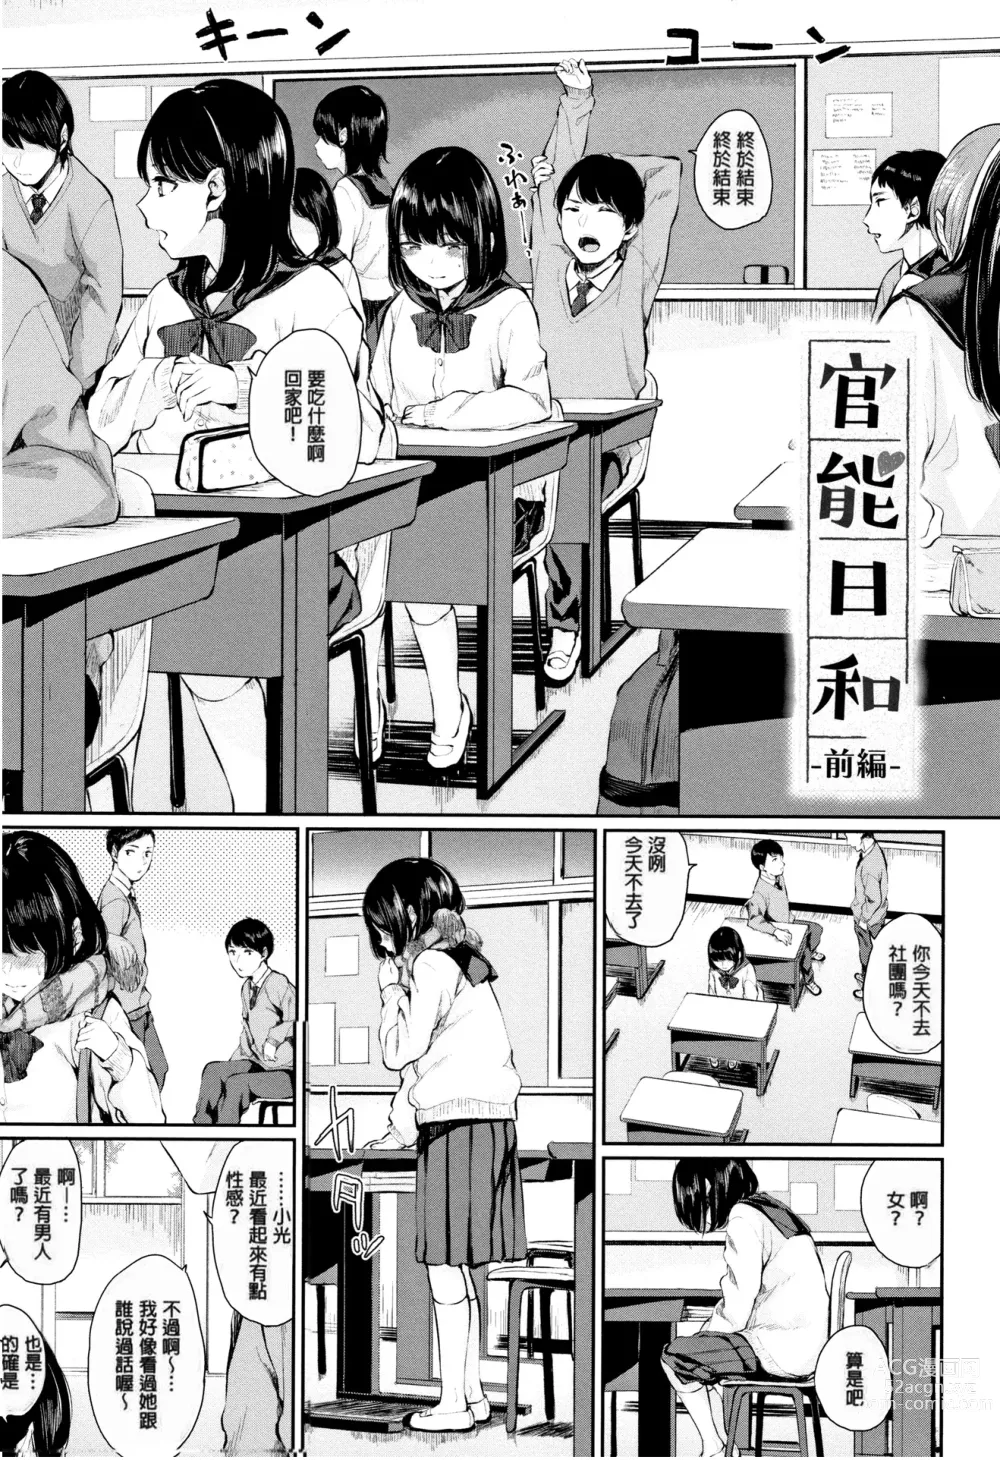 Page 5 of manga Kannou Biyori (uncensored)